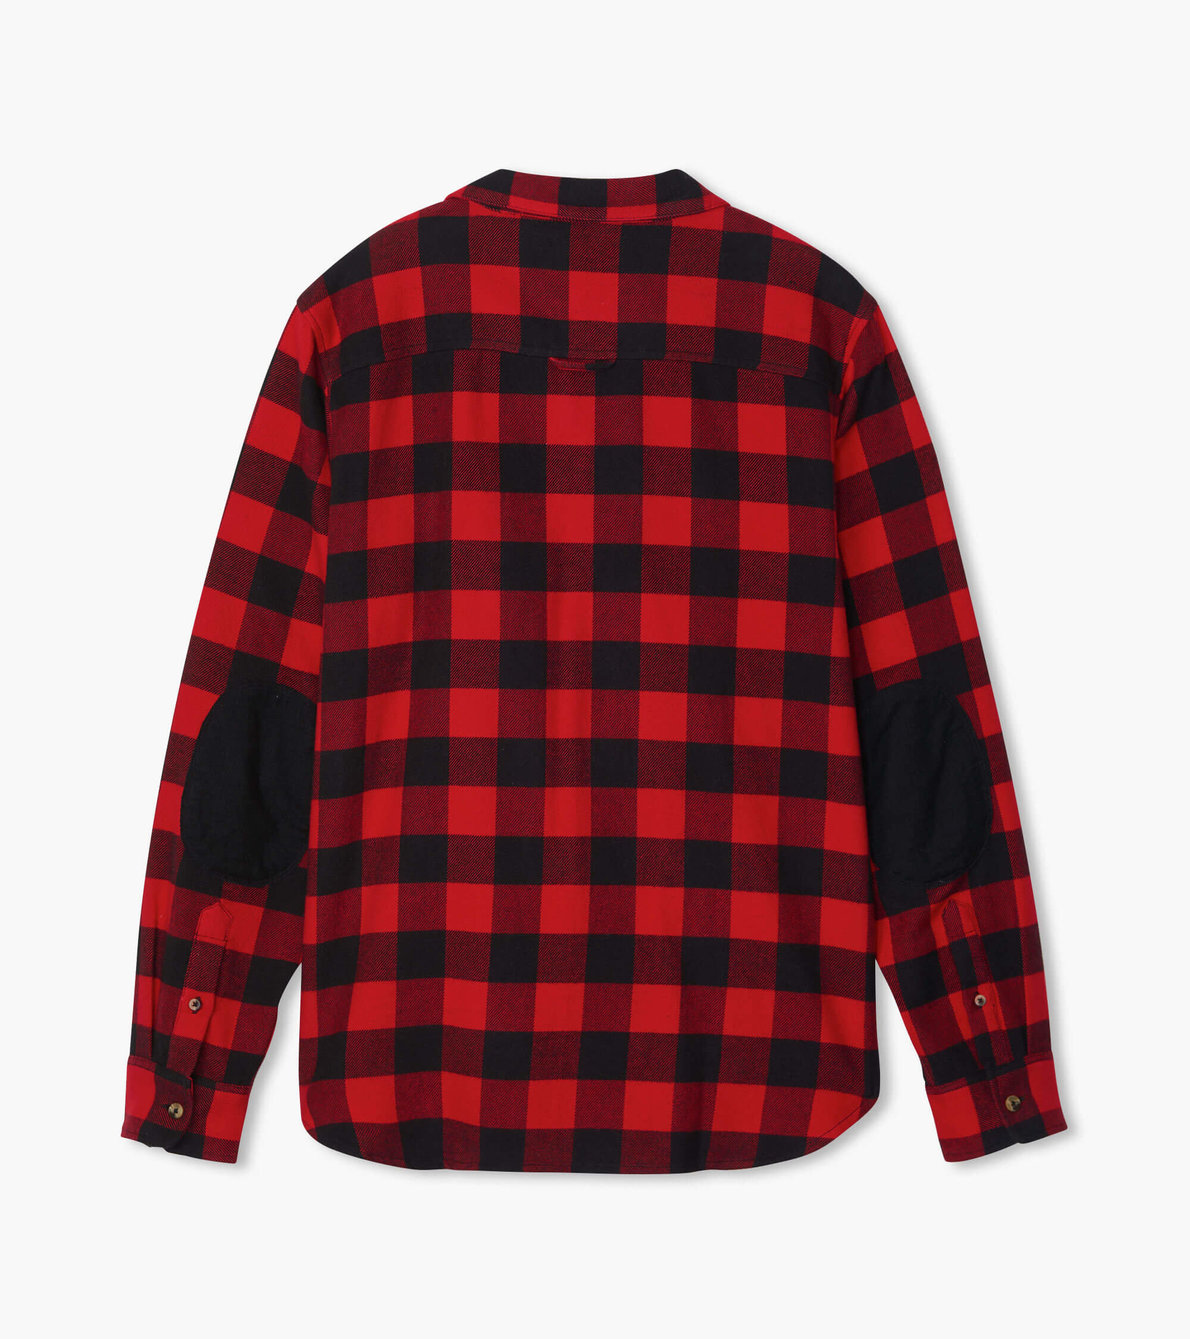 Agrandir l'image de Chemise boutonnée pour homme collection Heritage – Tartan rouge et noir